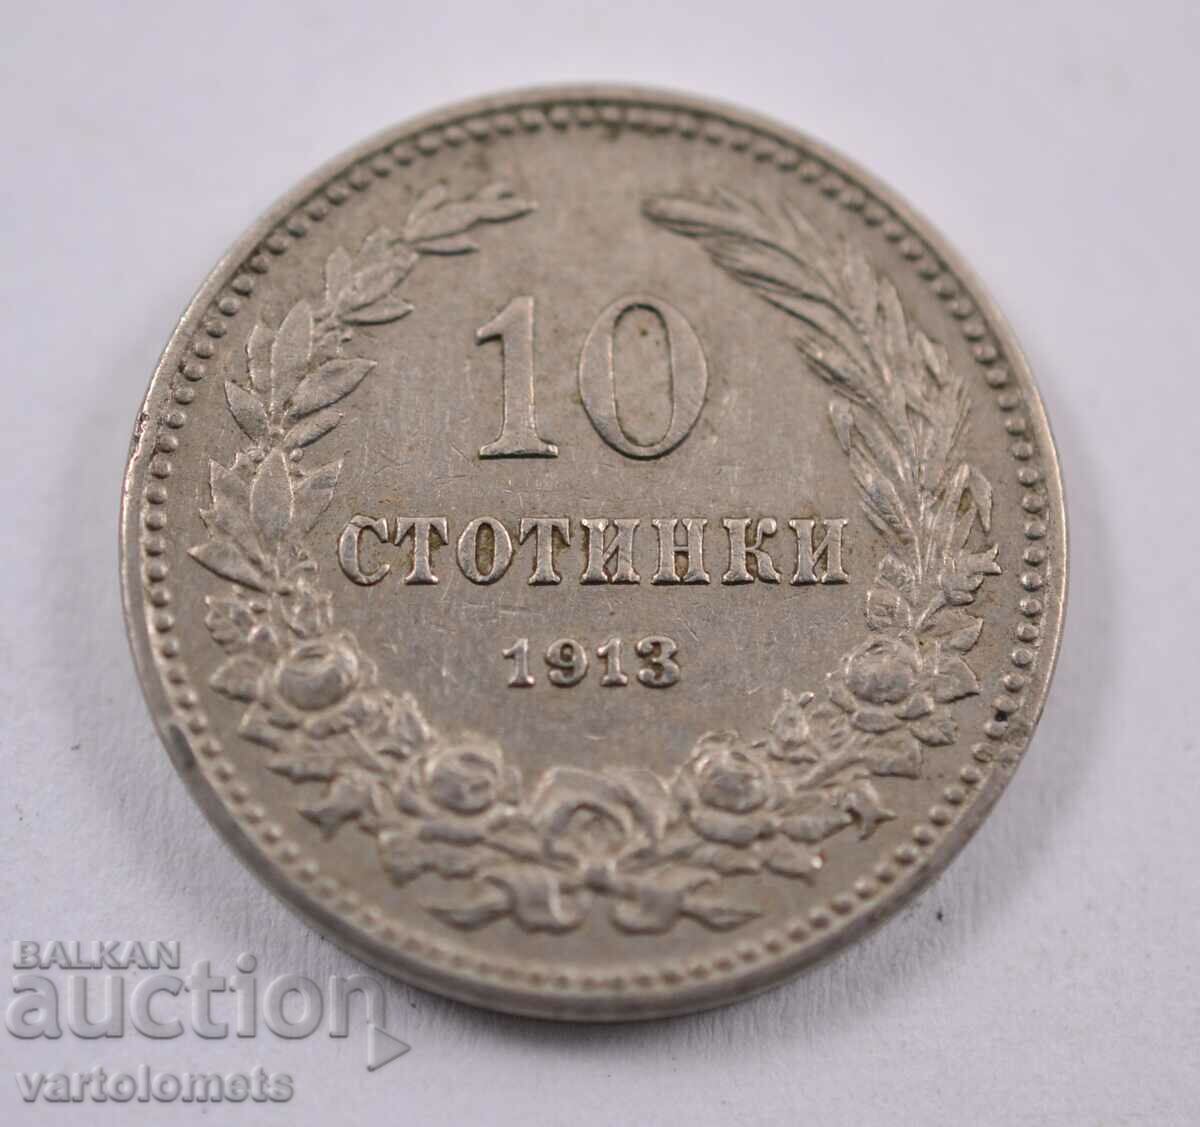 10 stotinki 1913 - Bulgaria